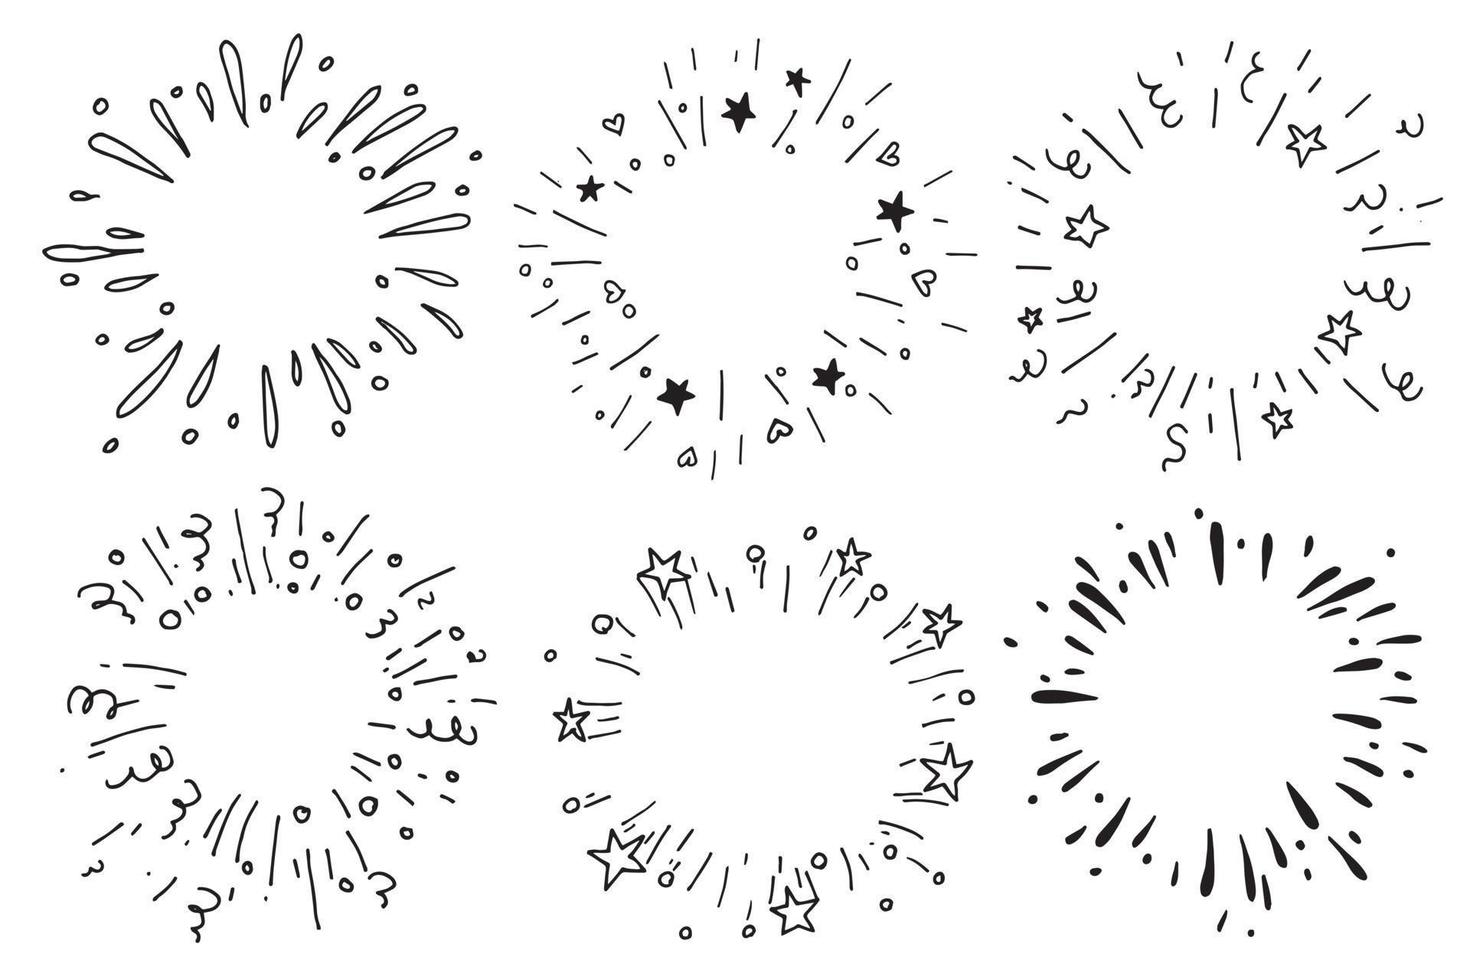 vector tekening in de stijl van doodle. reeks explosies, vuurwerk. feestelijk vuurwerk met sterren en slingers